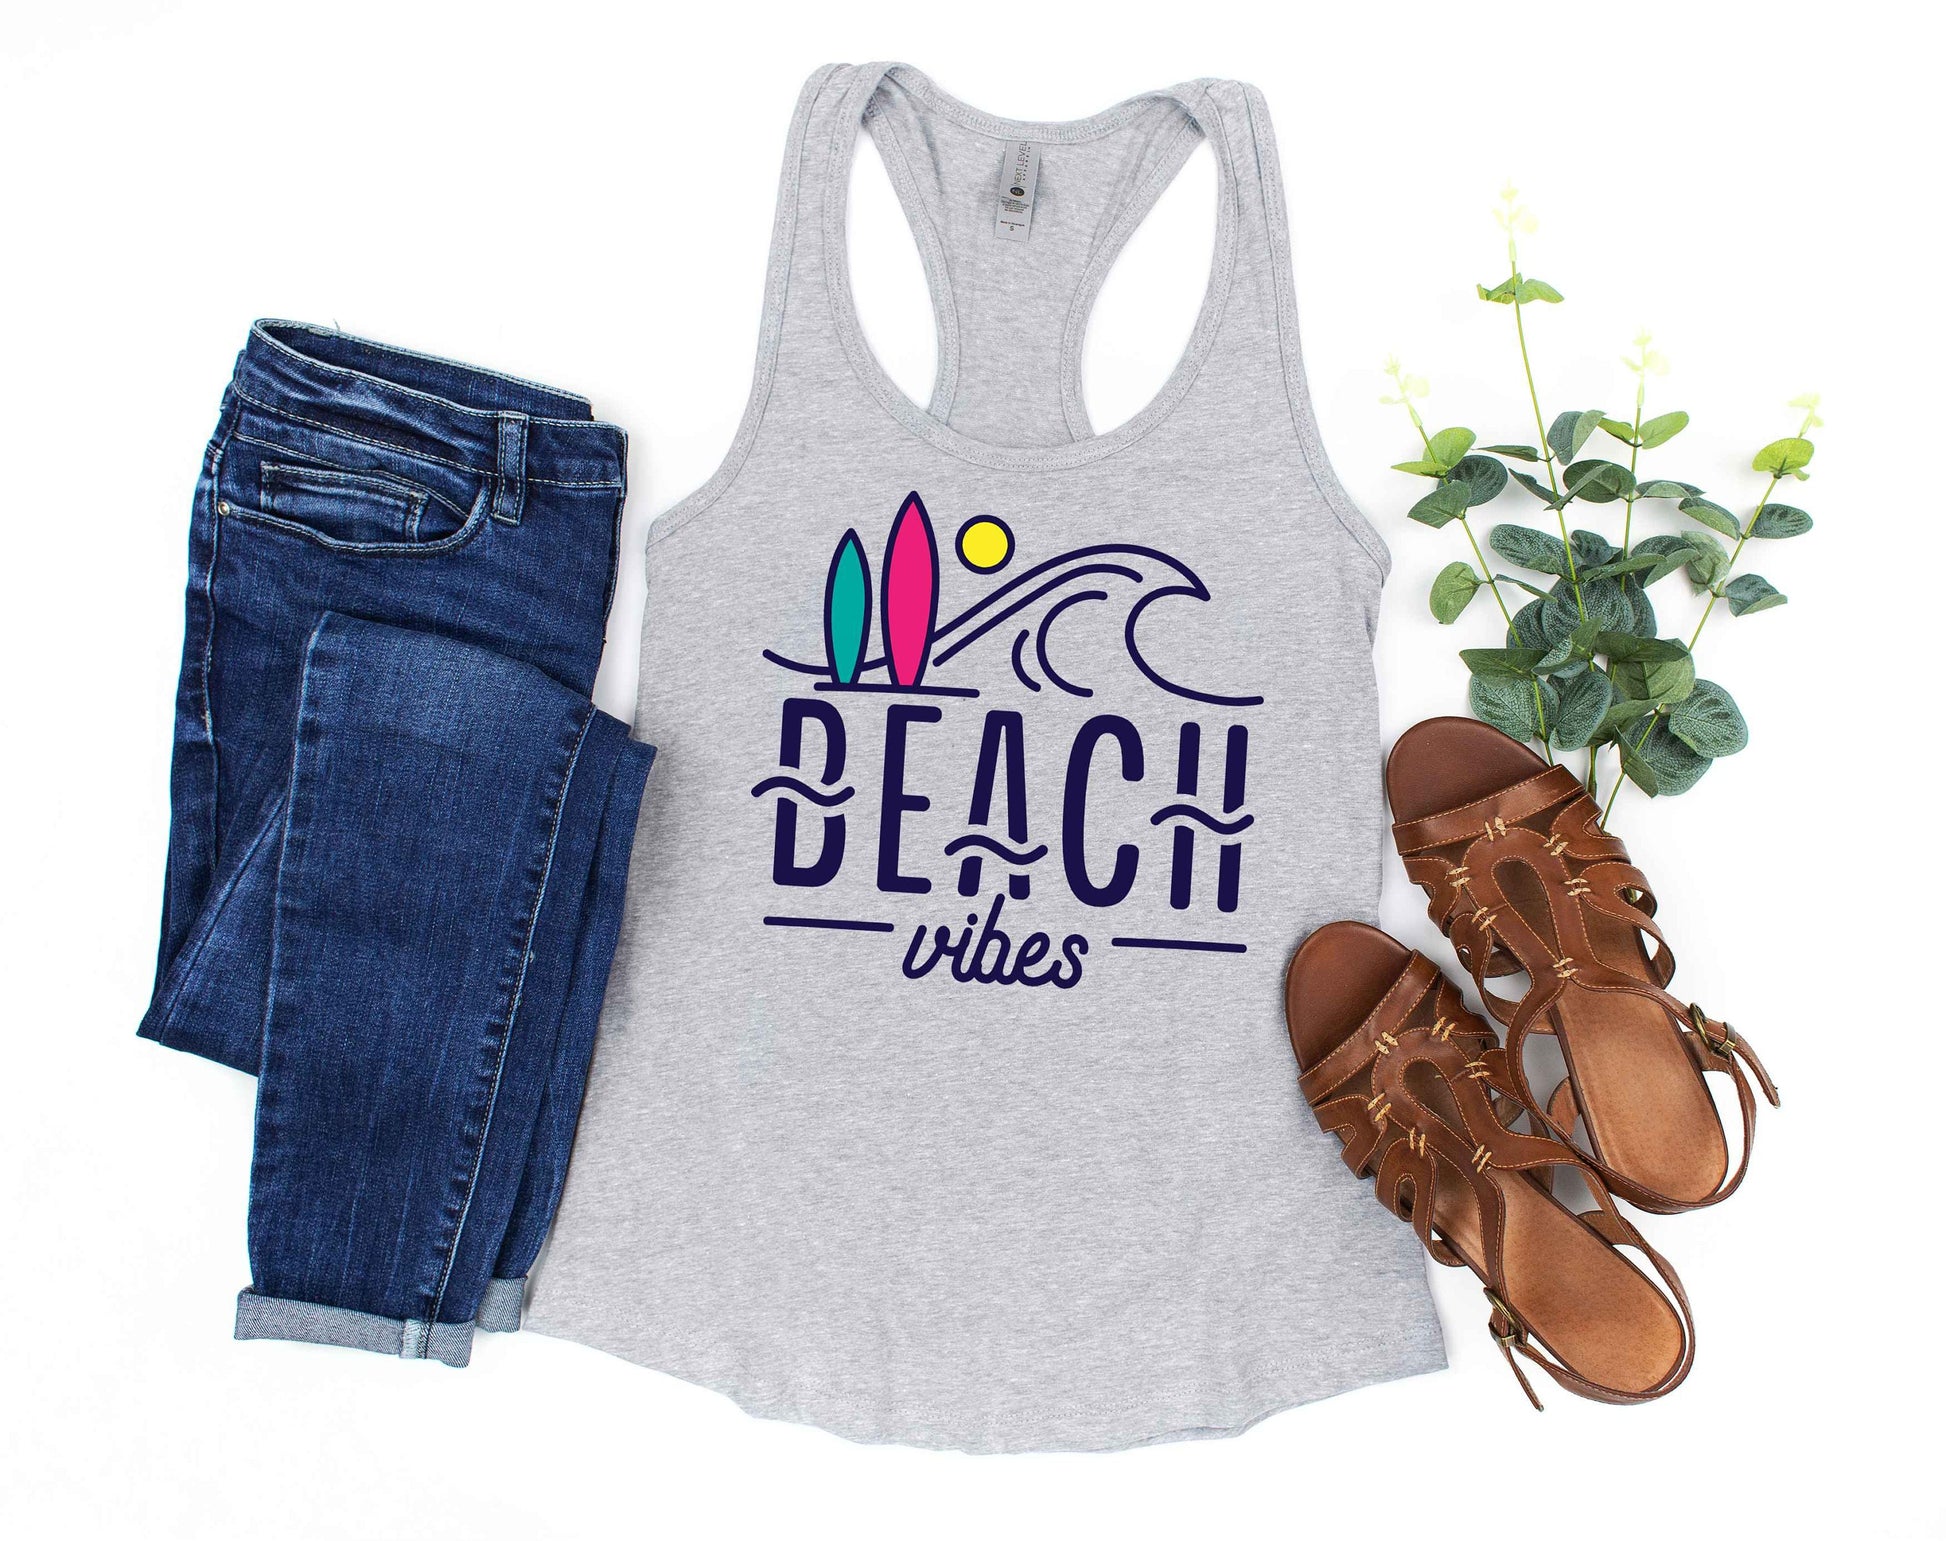 Beach Vibes racerback tank t-shirt - summer vacation shirt - beach vacation tank top